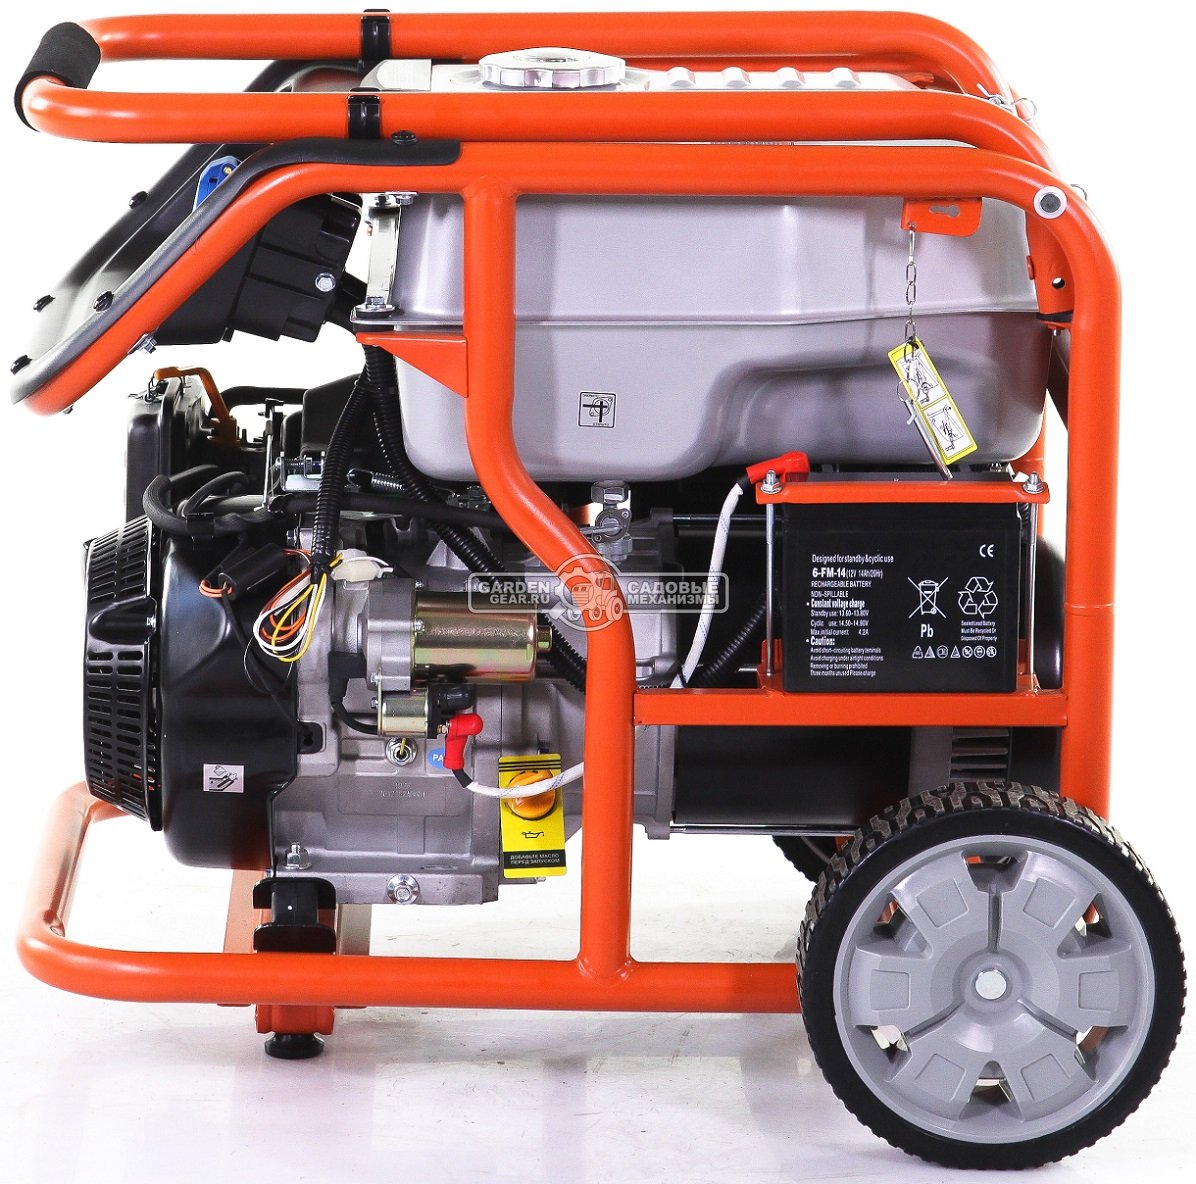 Бензиновый генератор Zongshen Premium KB 9000 E (PRC, 440 см3, 8.0/8.5 кВт, 32 л, электростарт, колеса, 99 кг)